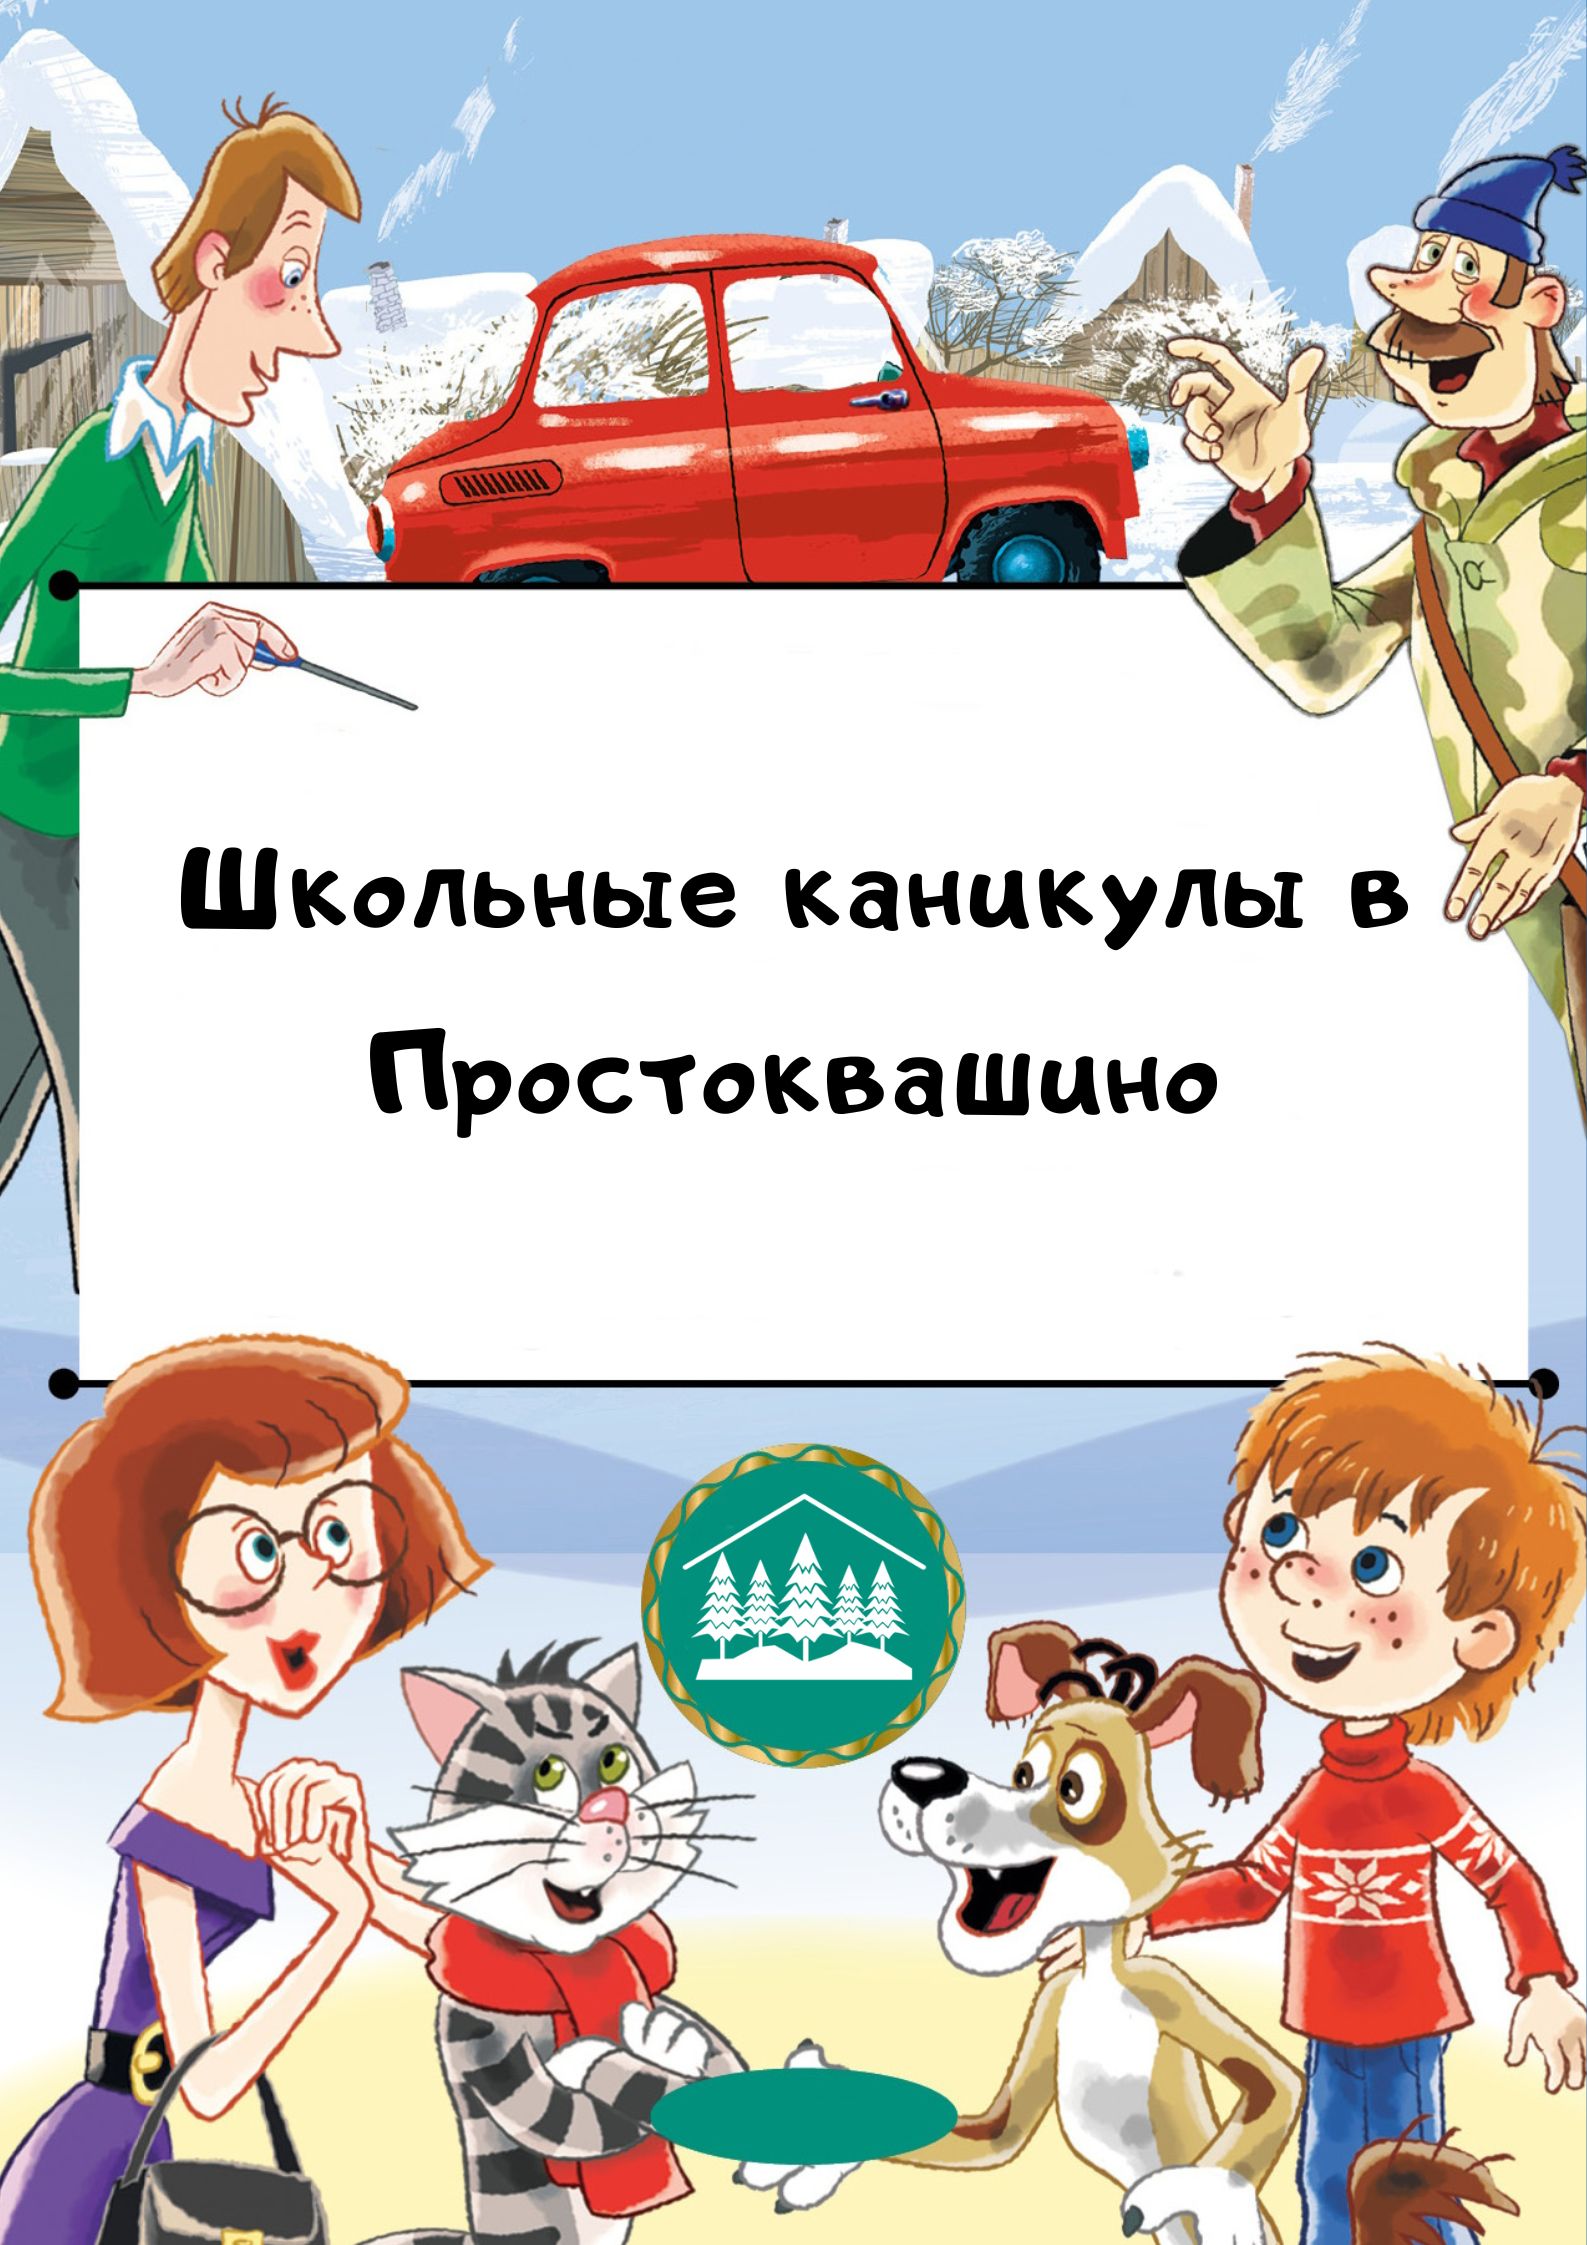 Календарь событий - «Школьные каникулы в Проcтоквашино» - (3 - 9 апреля)